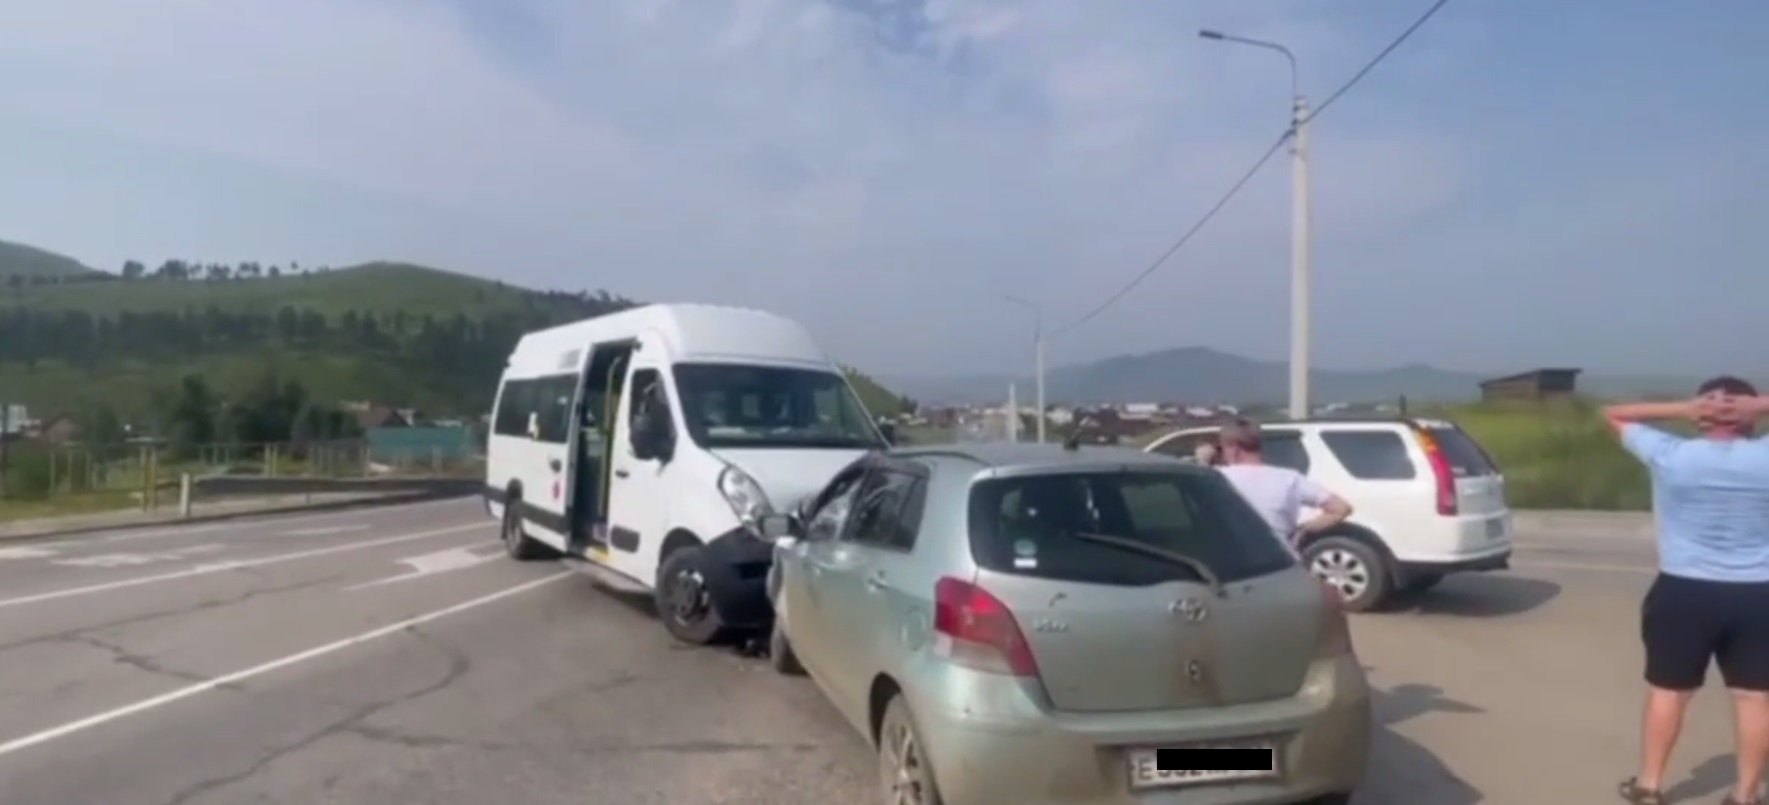 В пригороде Улан-Удэ лоб в лоб столкнулись автобус и «Тойота», есть пострадавший